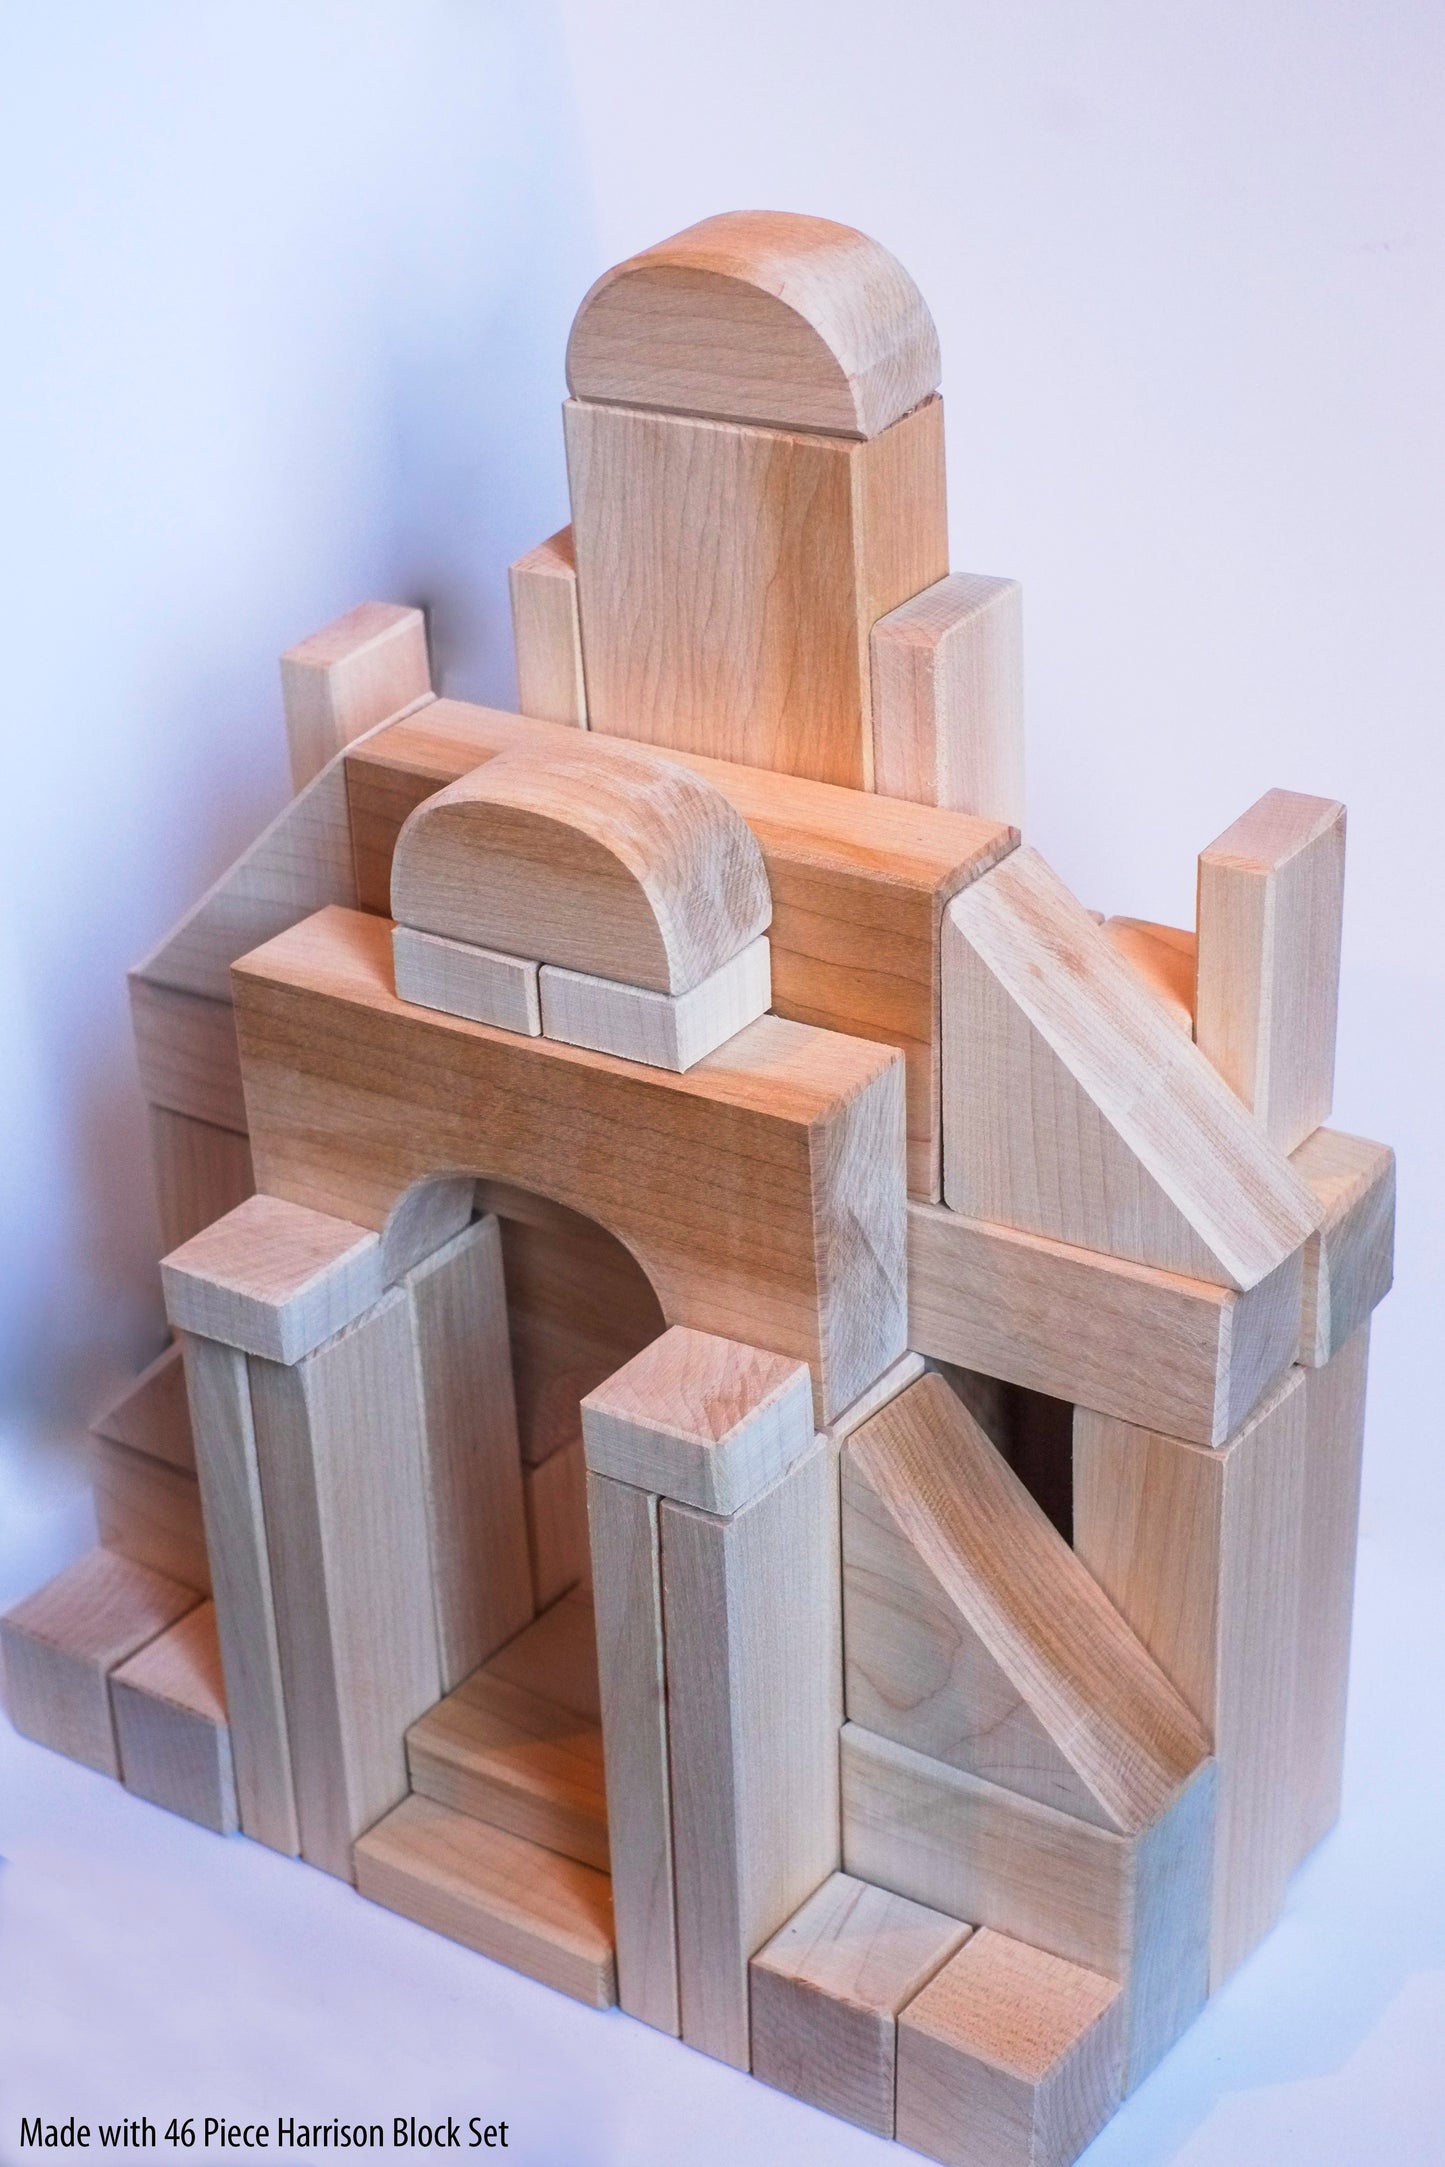 Ensemble de blocs Harrison de 46 pièces - Blocs unitaires fabriqués au Canada 